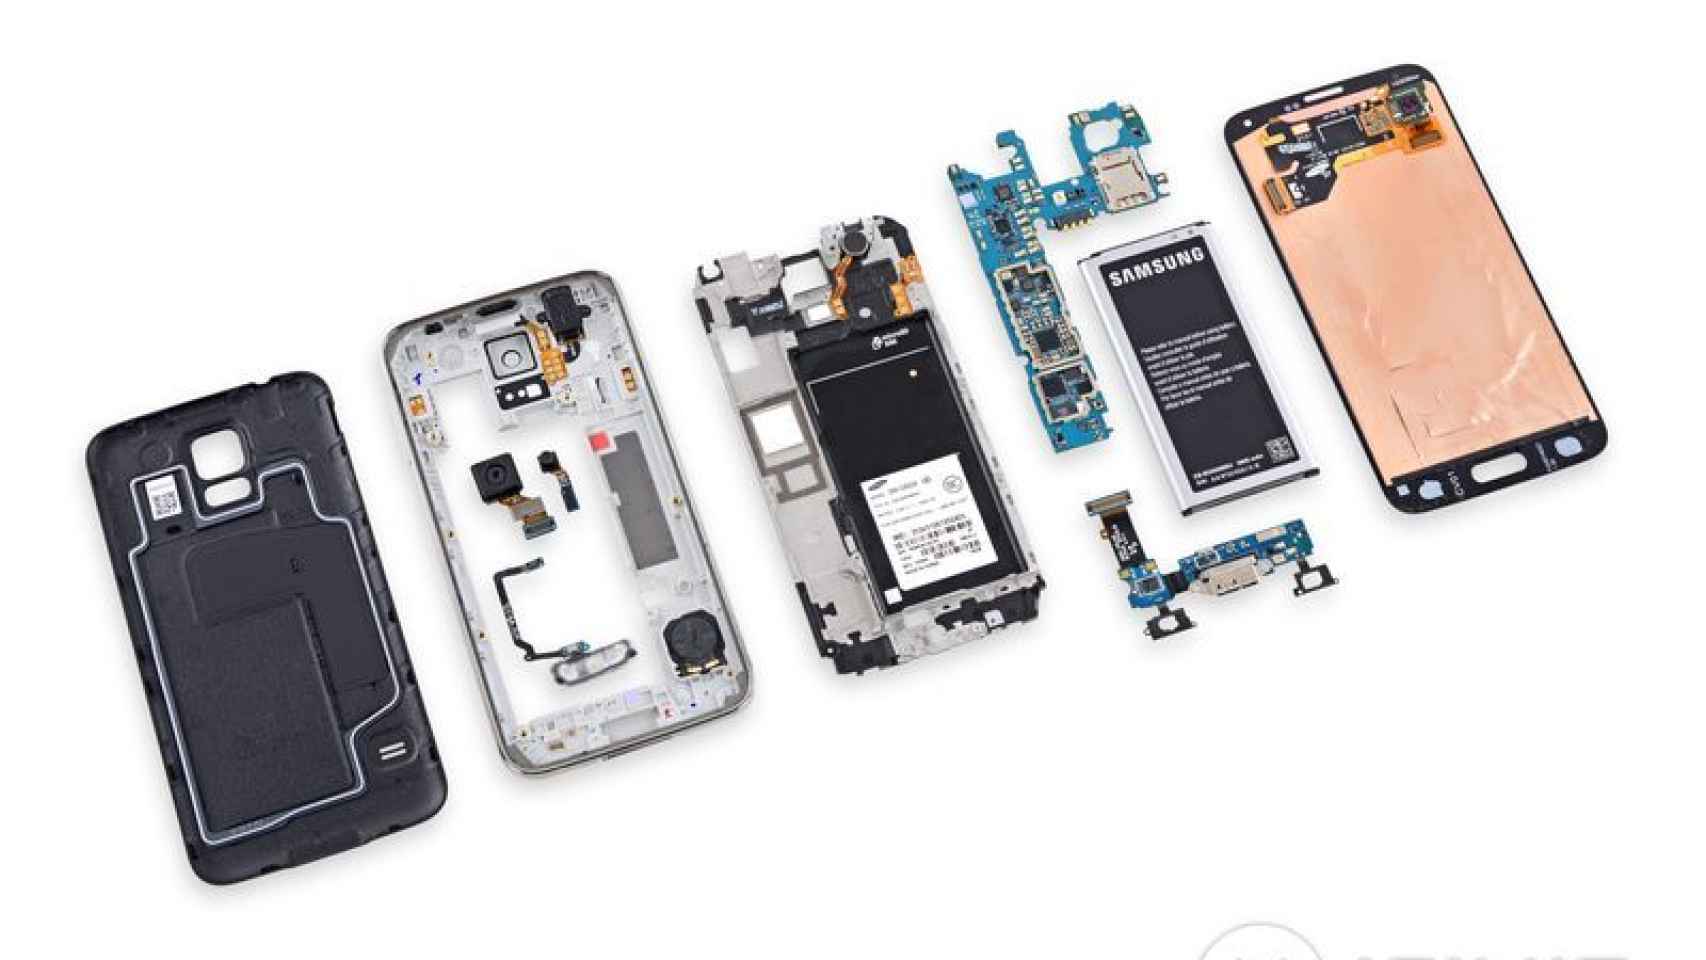 Así es el Samsung Galaxy S5  por dentro. Descubre todos sus componentes